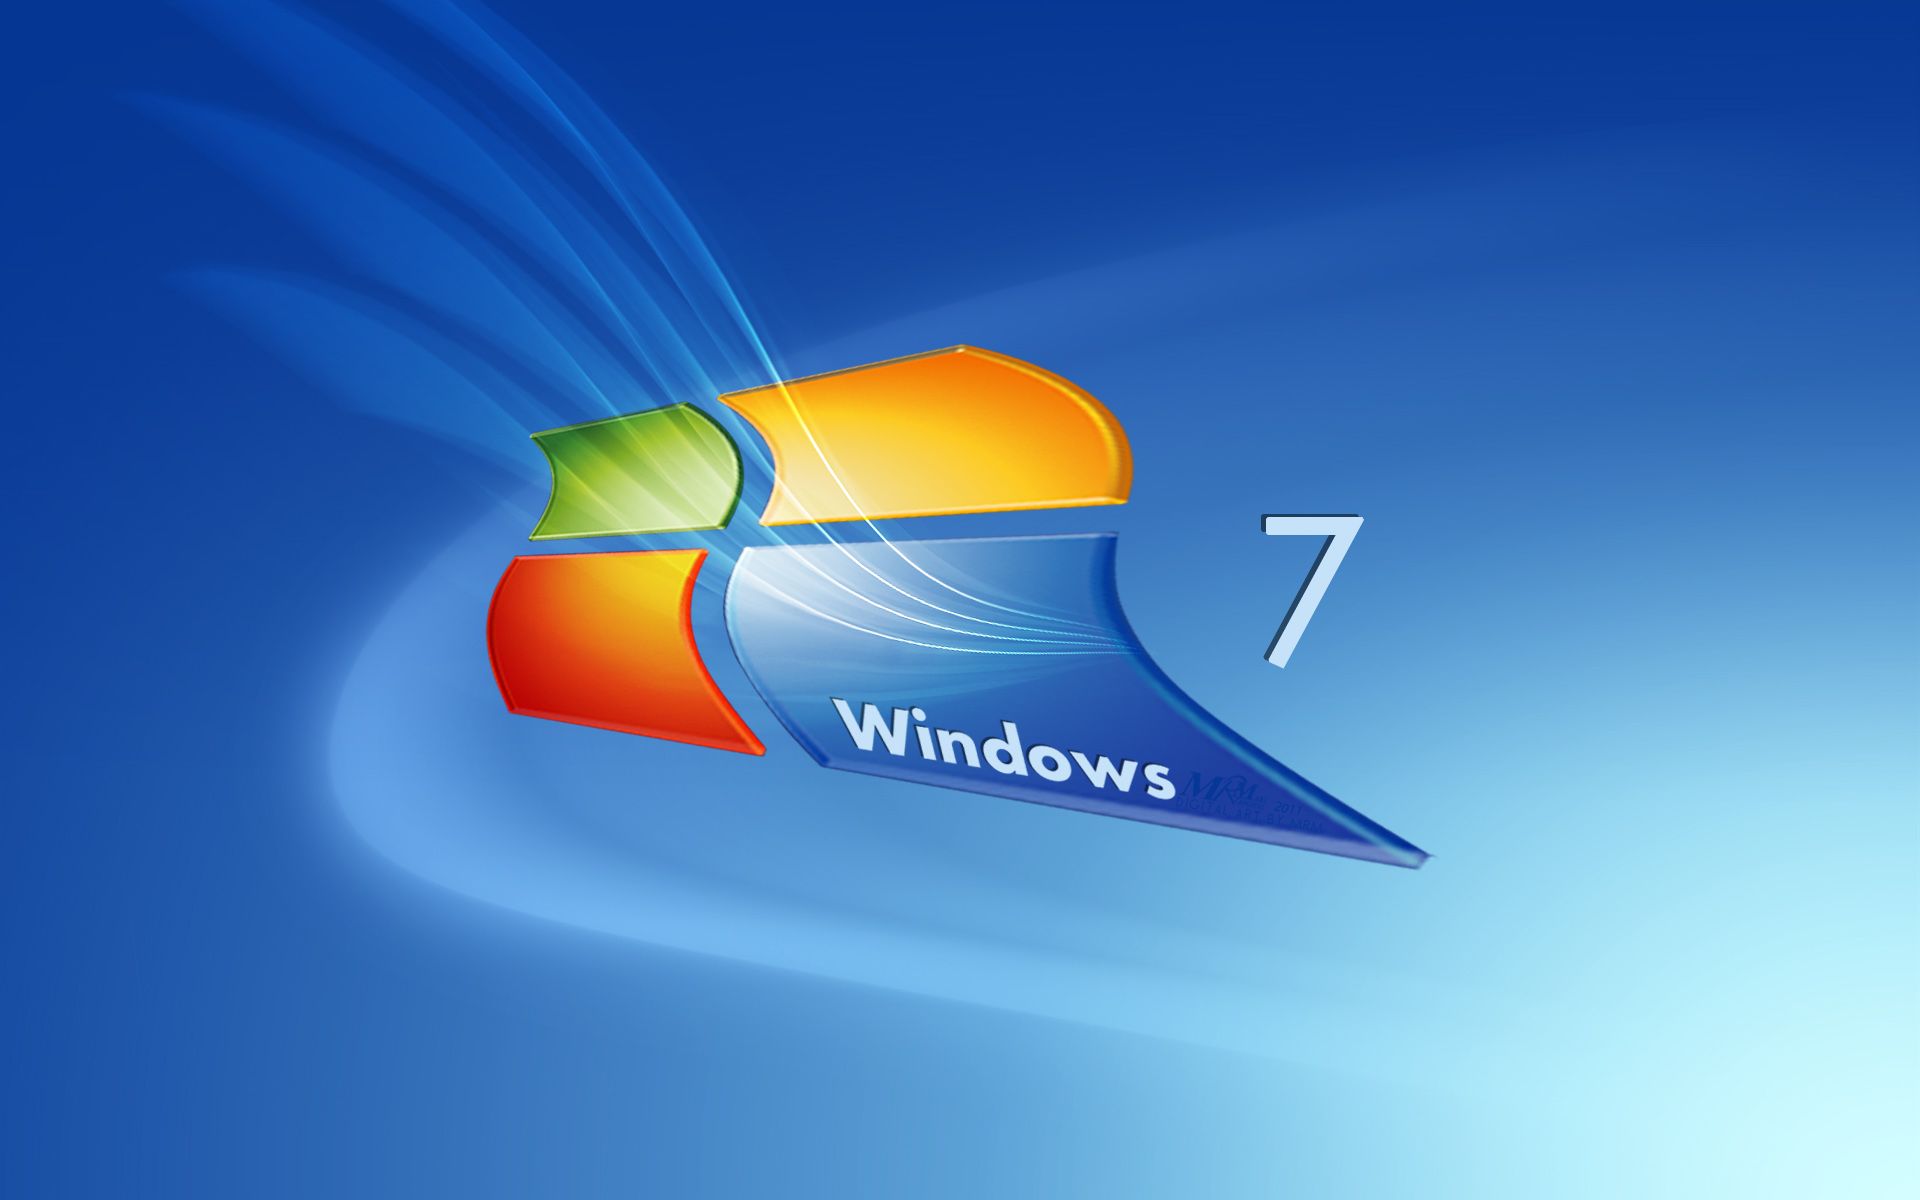 윈도우 7 노트북 hd 배경 화면,운영 체제,폰트,컴퓨터 아이콘,제도법,그래픽 디자인